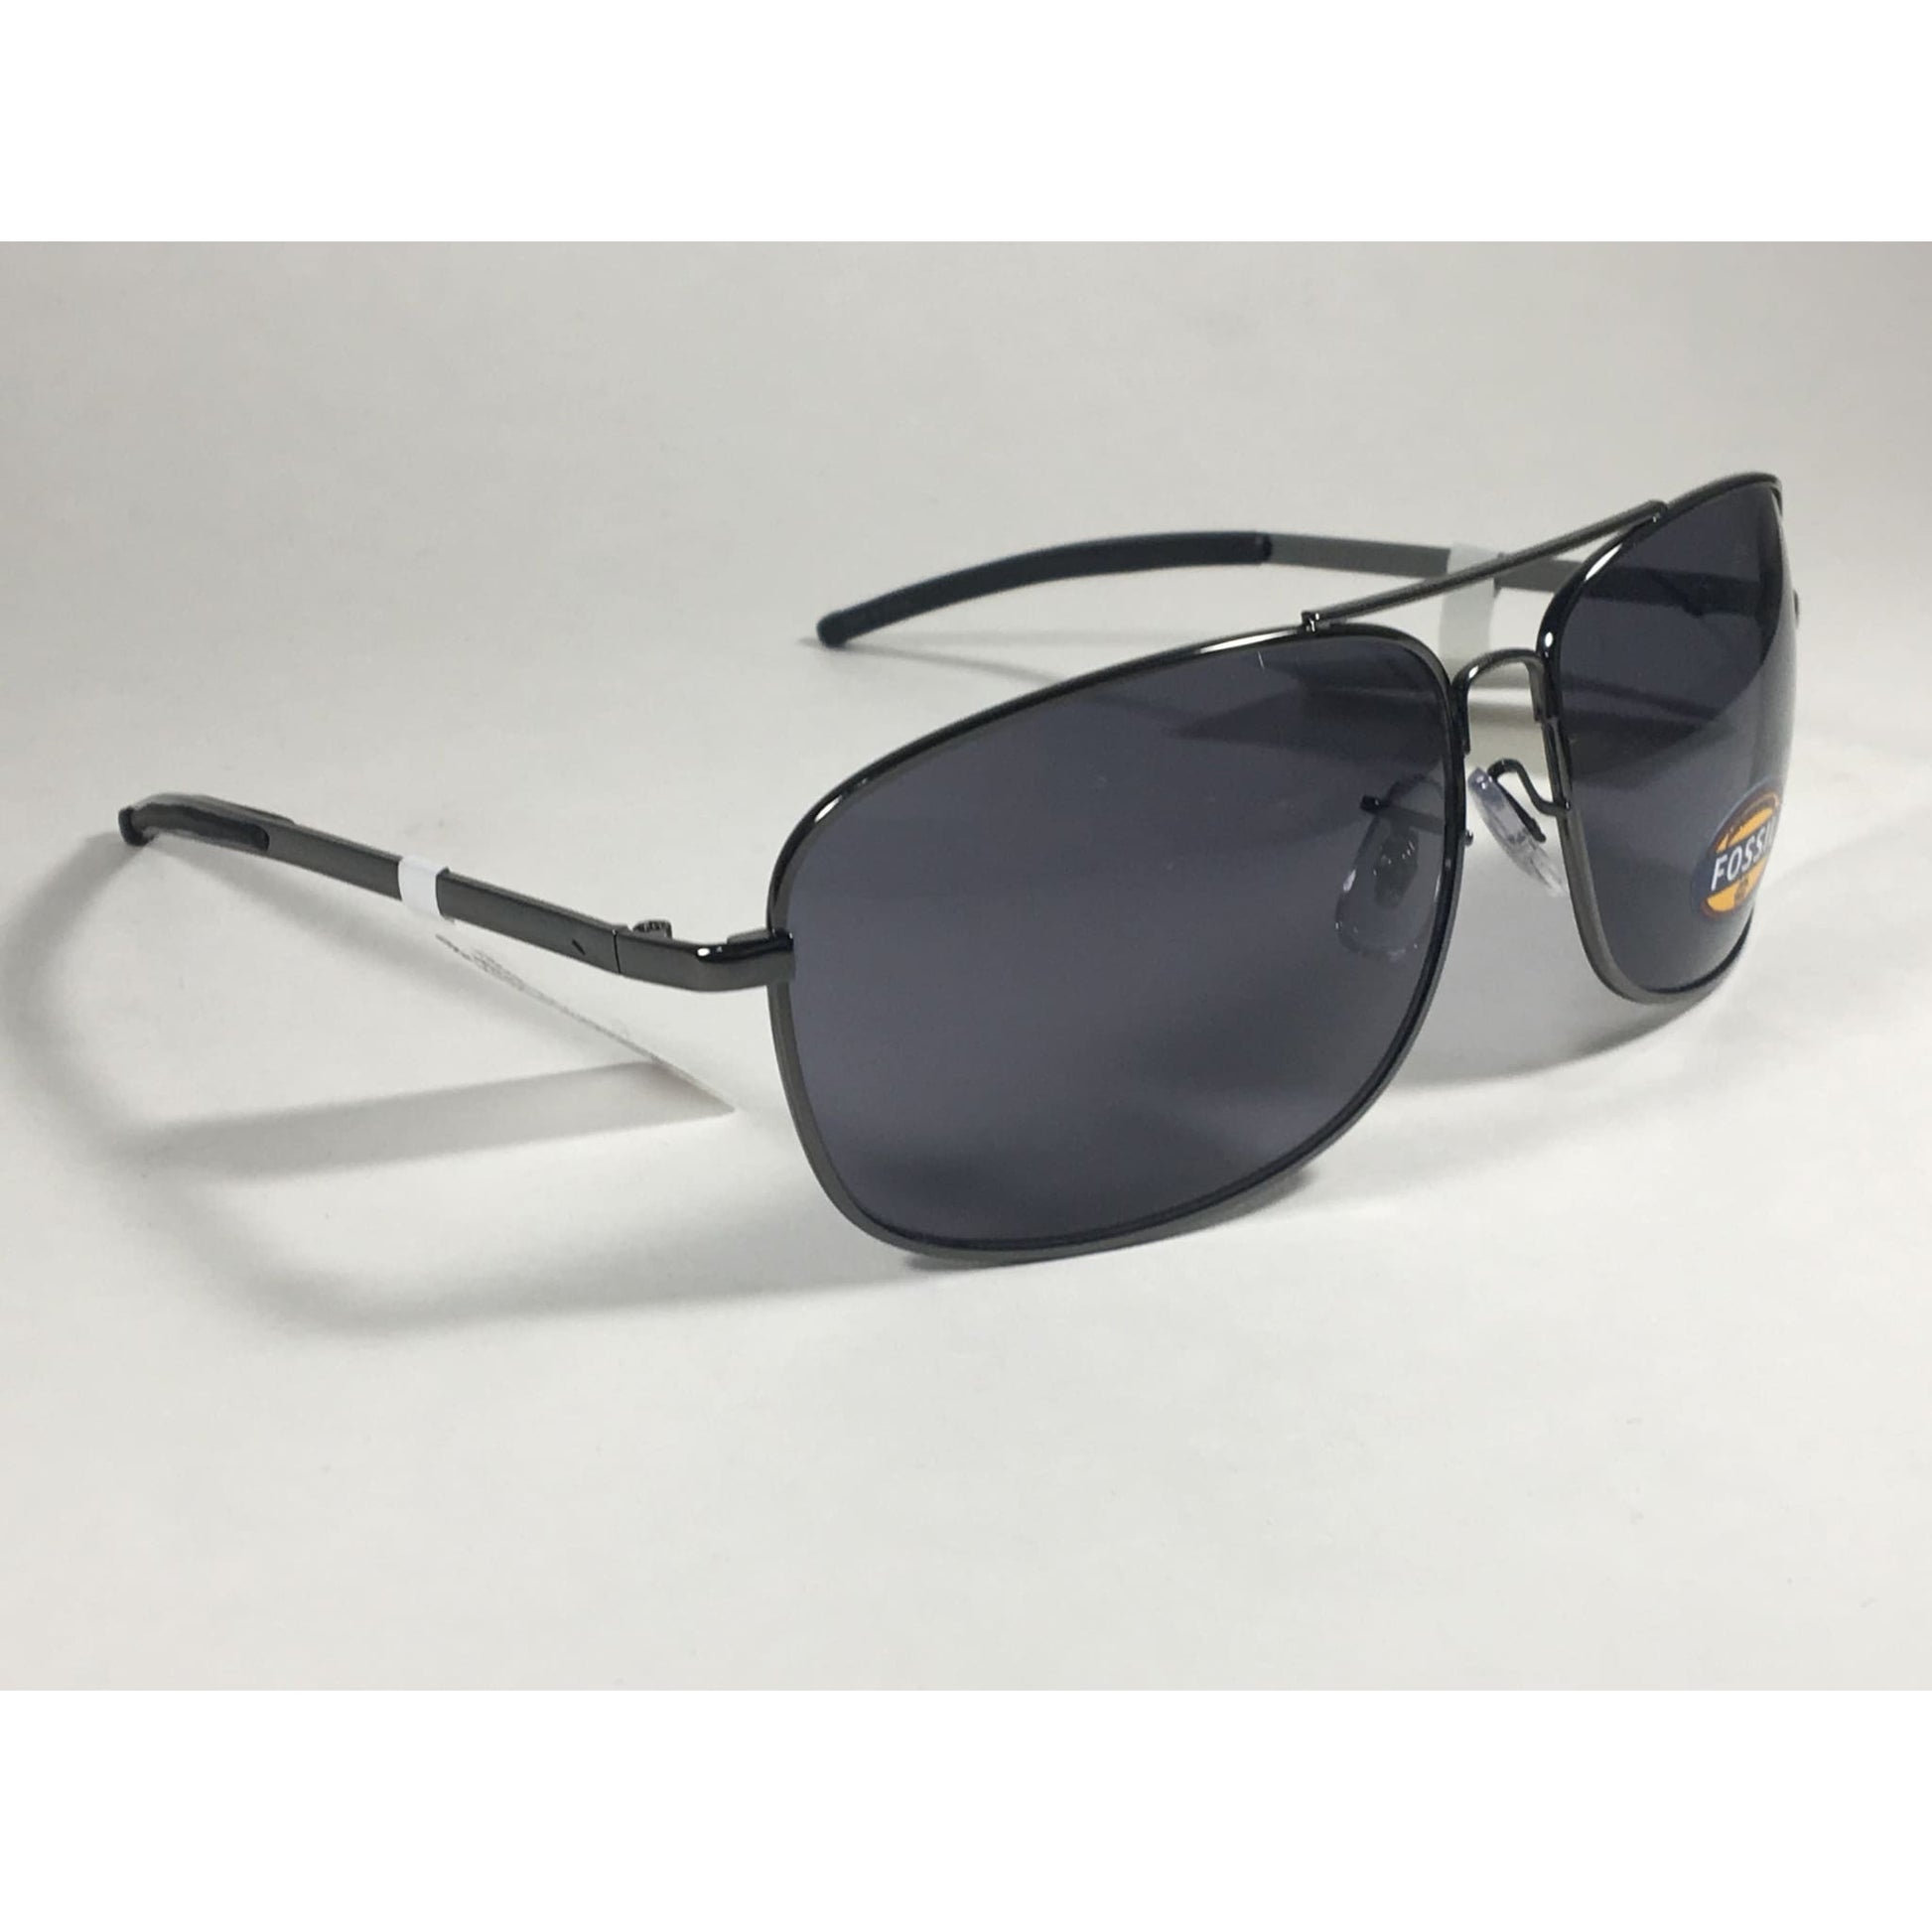 Fossil Fm32 Navigator Sunglasses Gunmetal Gray Frame Gray Lens Mens